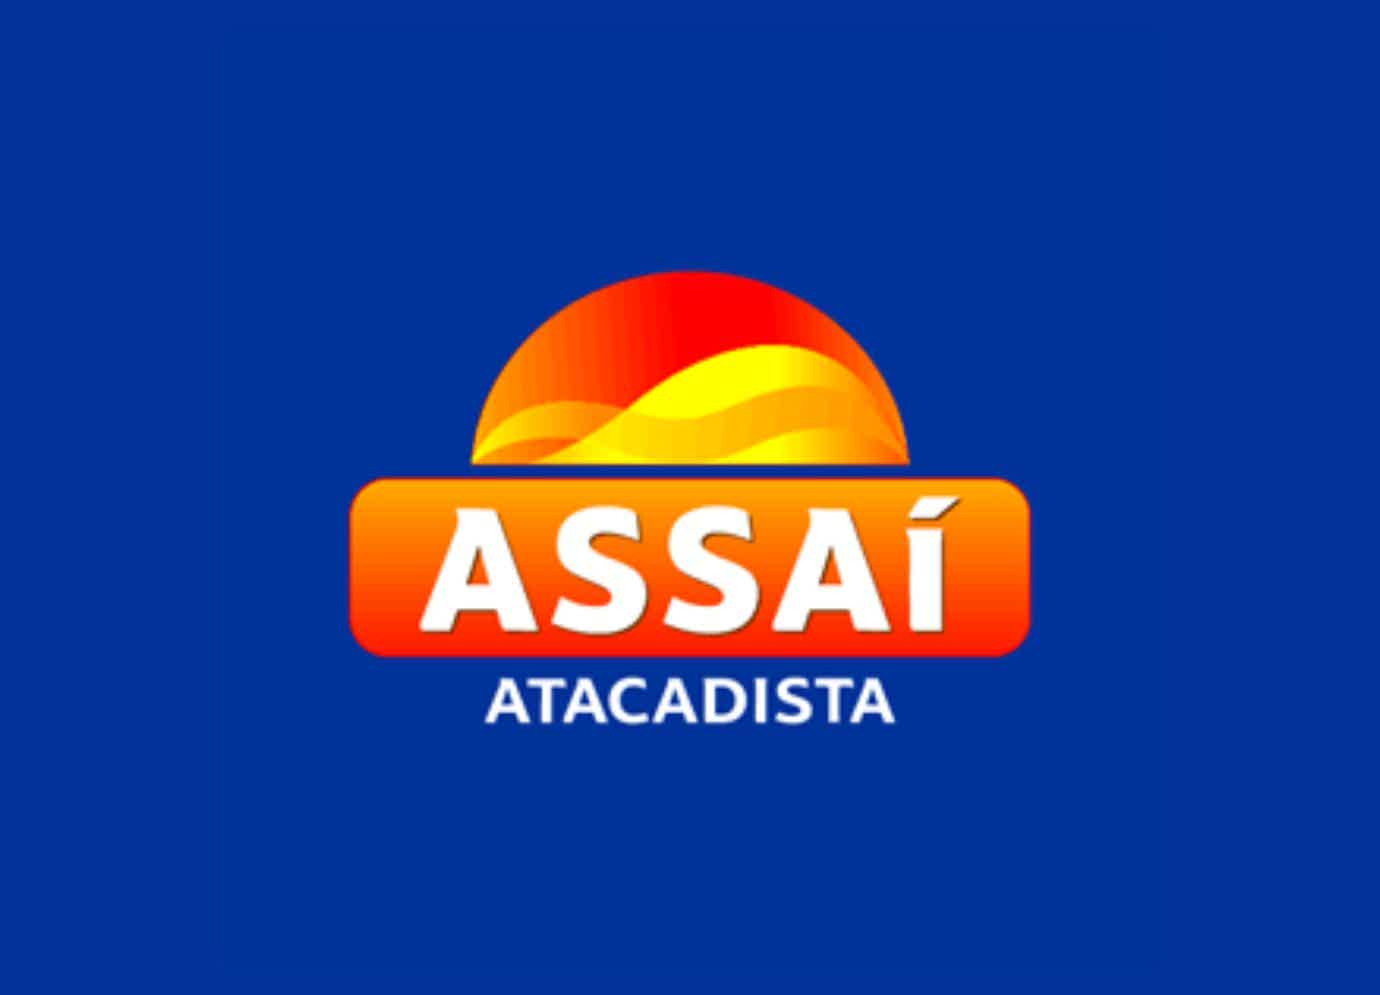 Imagem com funco azul e um simbolo de por do sol escrito "Assaí"